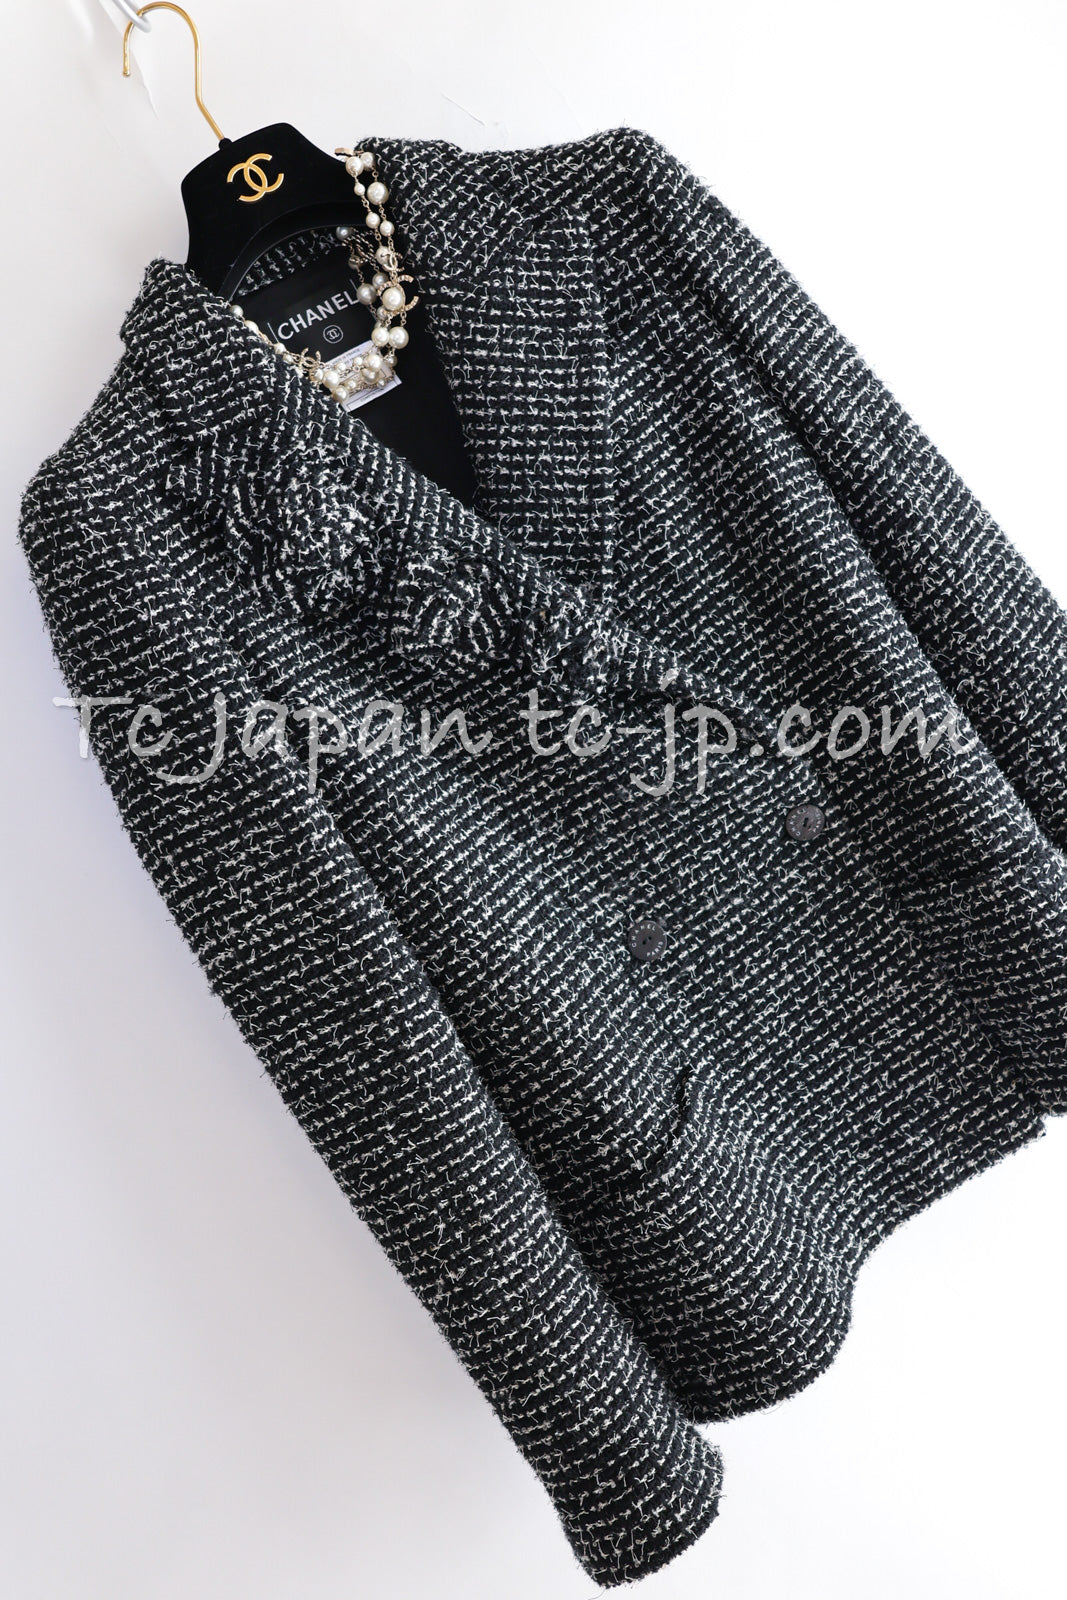 サイズジャケットF38シャネル スーツ CHANEL ブラック ホワイト カメリア ブローチ３つ付 ツイード ダブル ジャケット 水滴 CCボタン スカート 美品 36 38